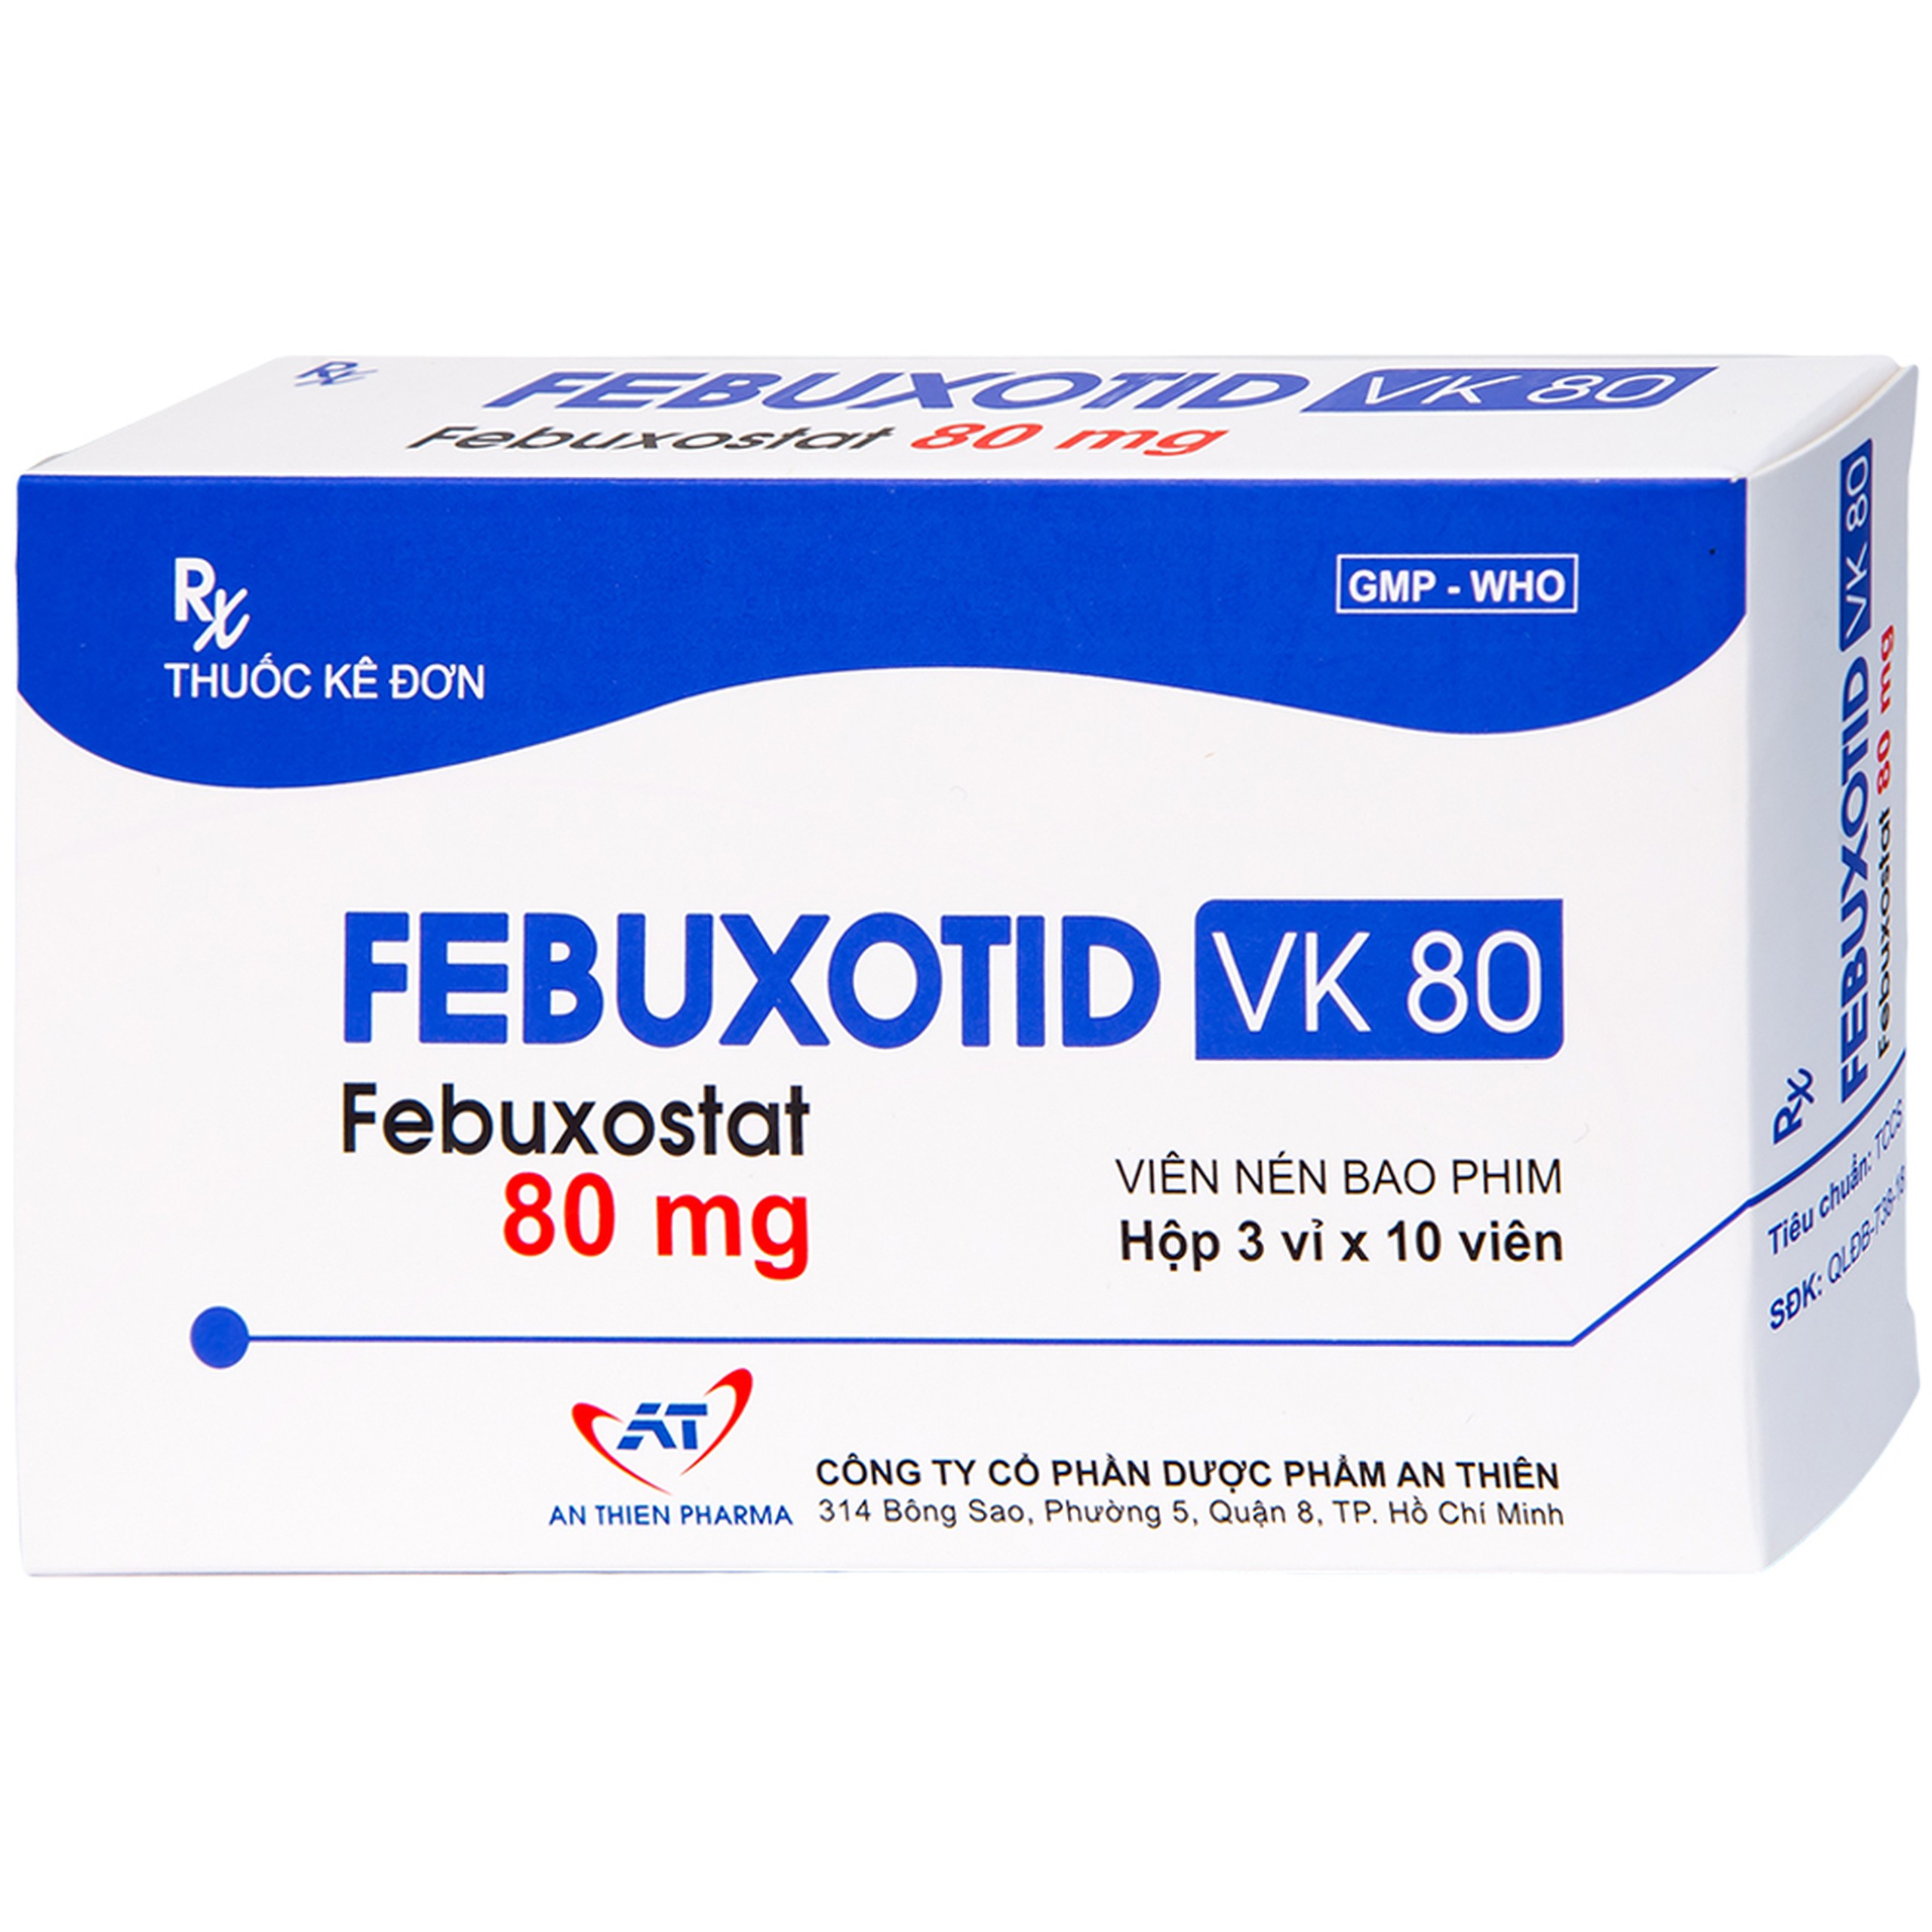 Thuốc Febuxotid VK 80 An Thiên điều trị tăng acid uric máu mãn tính (3 vỉ x 10 viên)